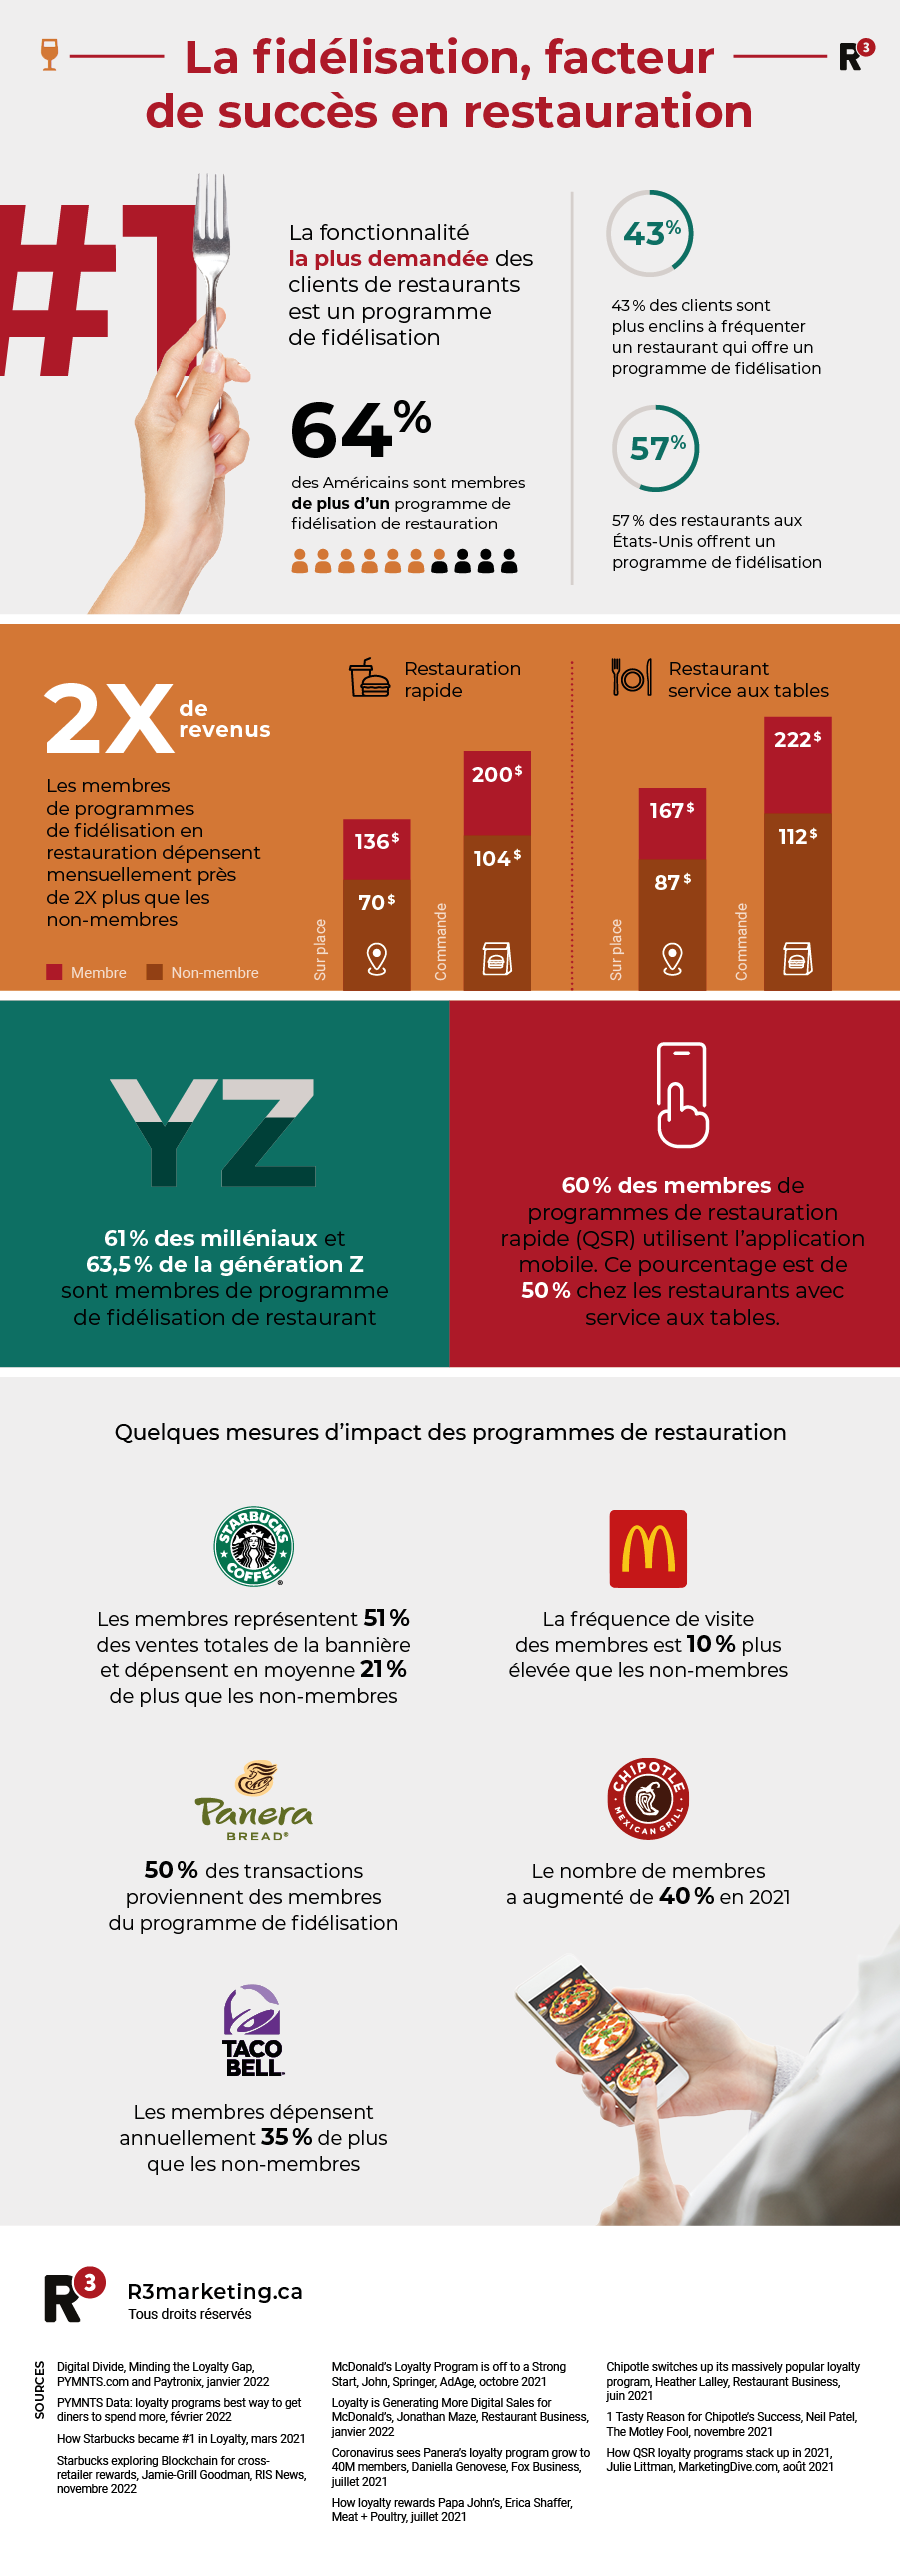 Infographie La fidélisation, facteur de succès en restauration